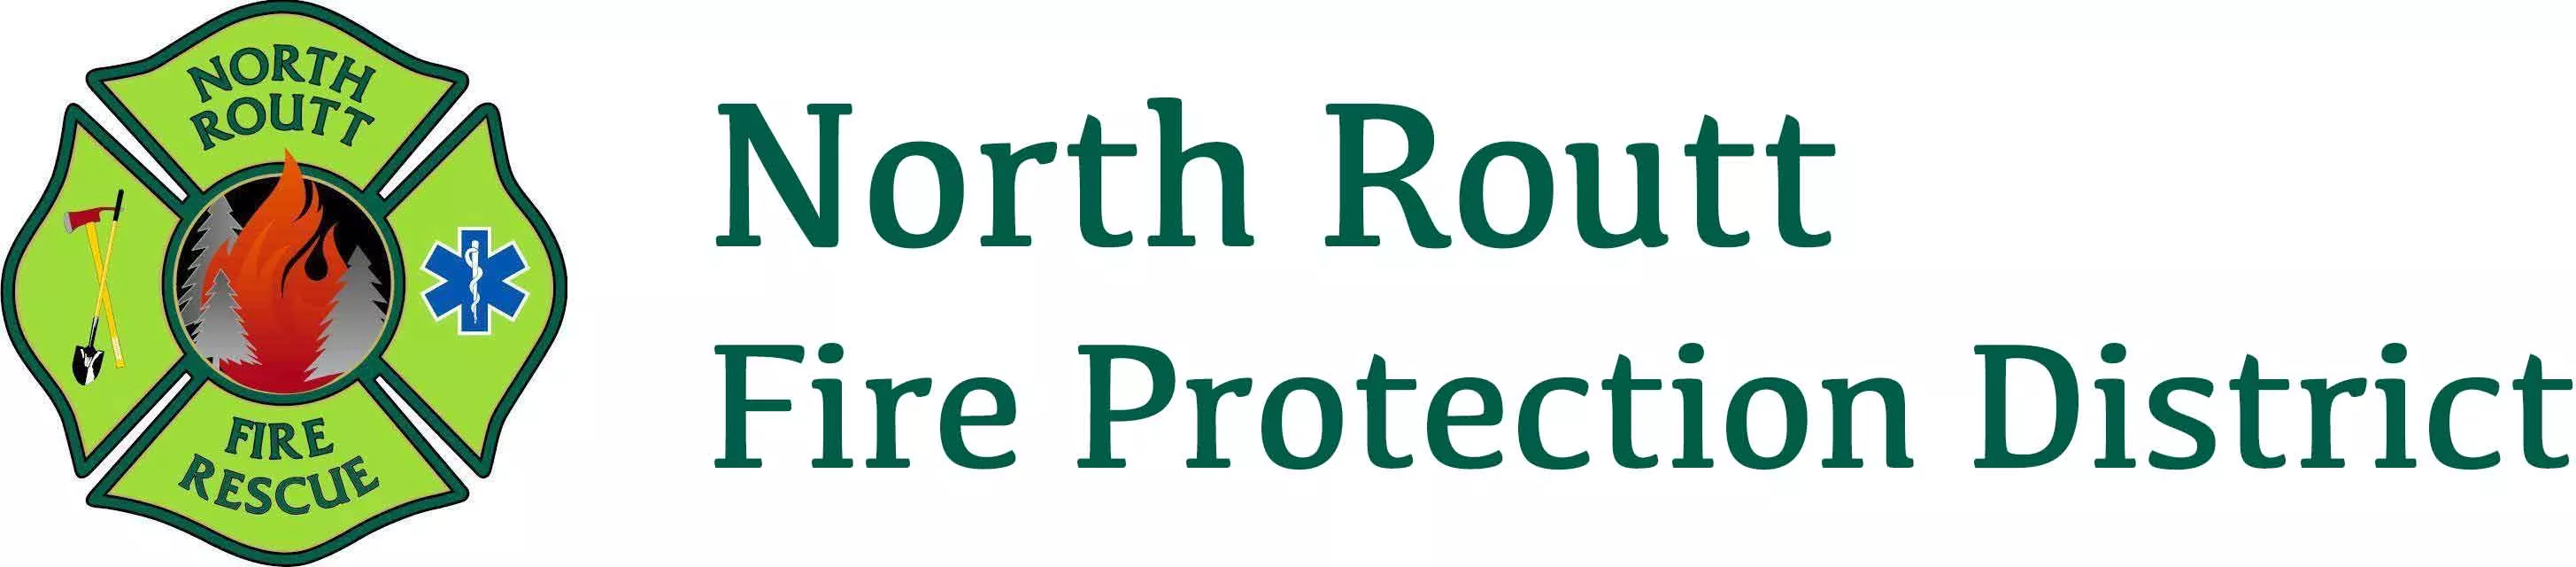 North Routt Fire Rescue logo